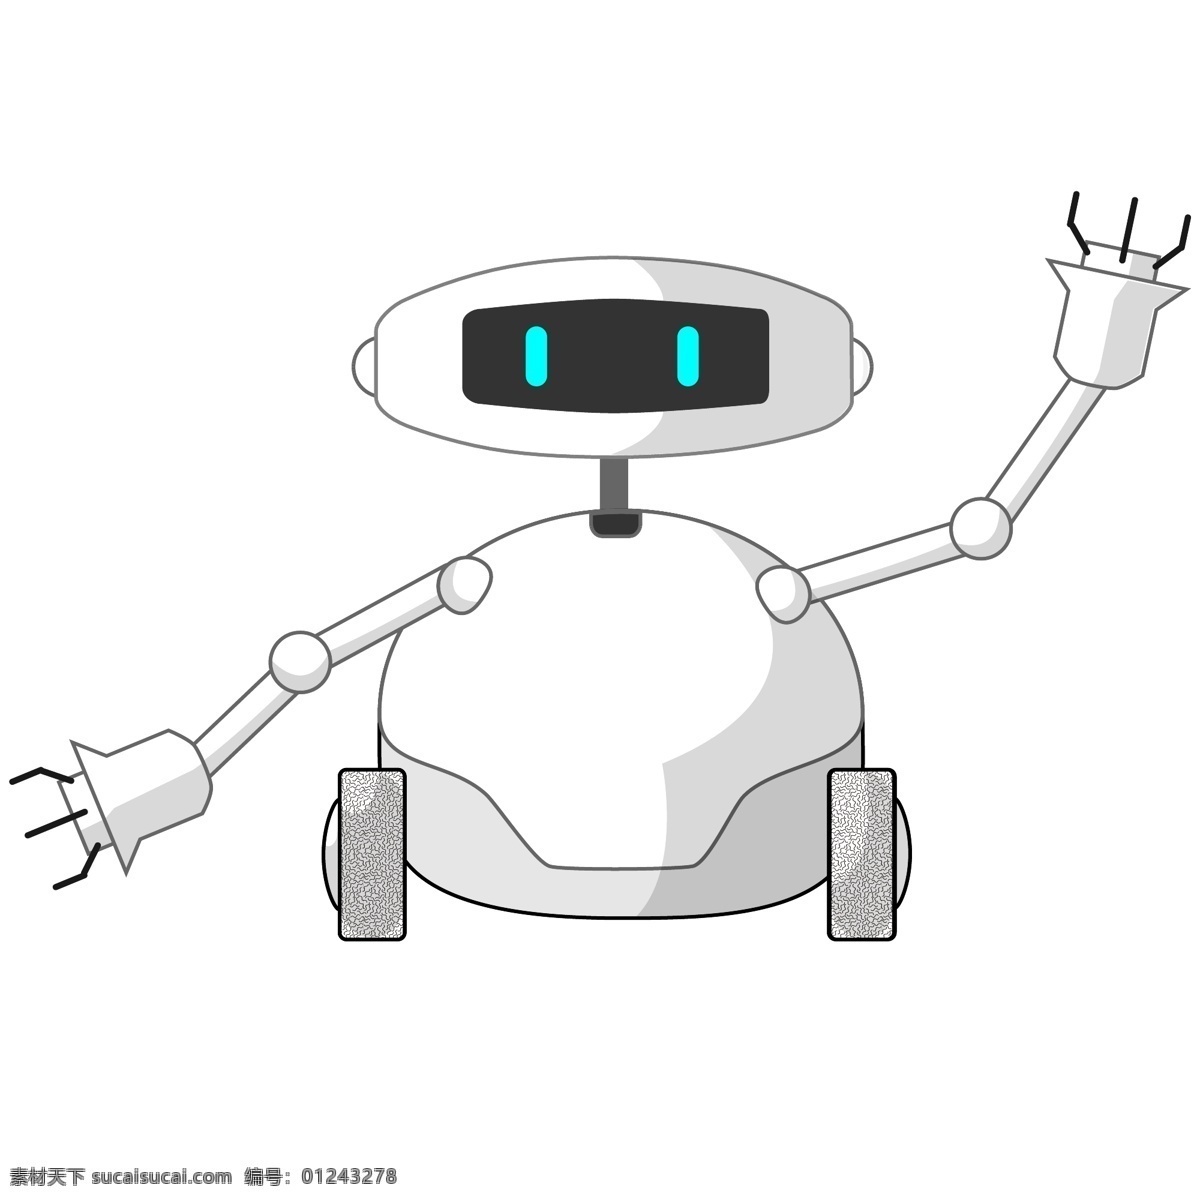 智能 科技 机器人 卡通 可爱 矢量 矢量机器人 炫酷科技 智能机器人 轮子机器人